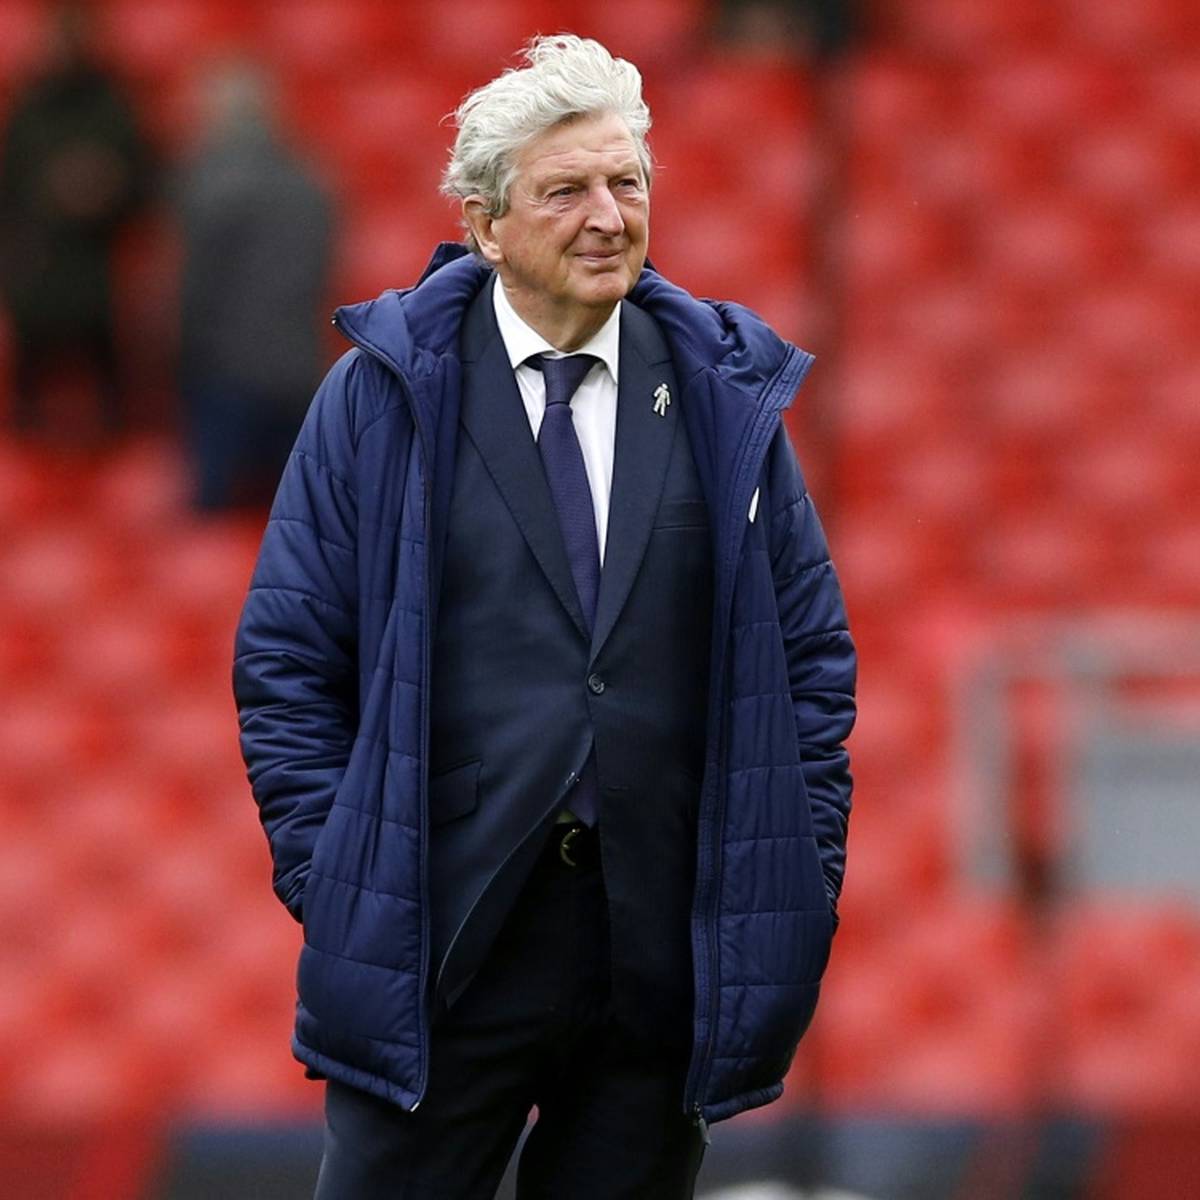 Der ehemalige Teammanager der englischen Fußball-Nationalmannschaft, Roy Hodgson (74), soll laut Medienberichten neuer Coach des FC Watford werden.